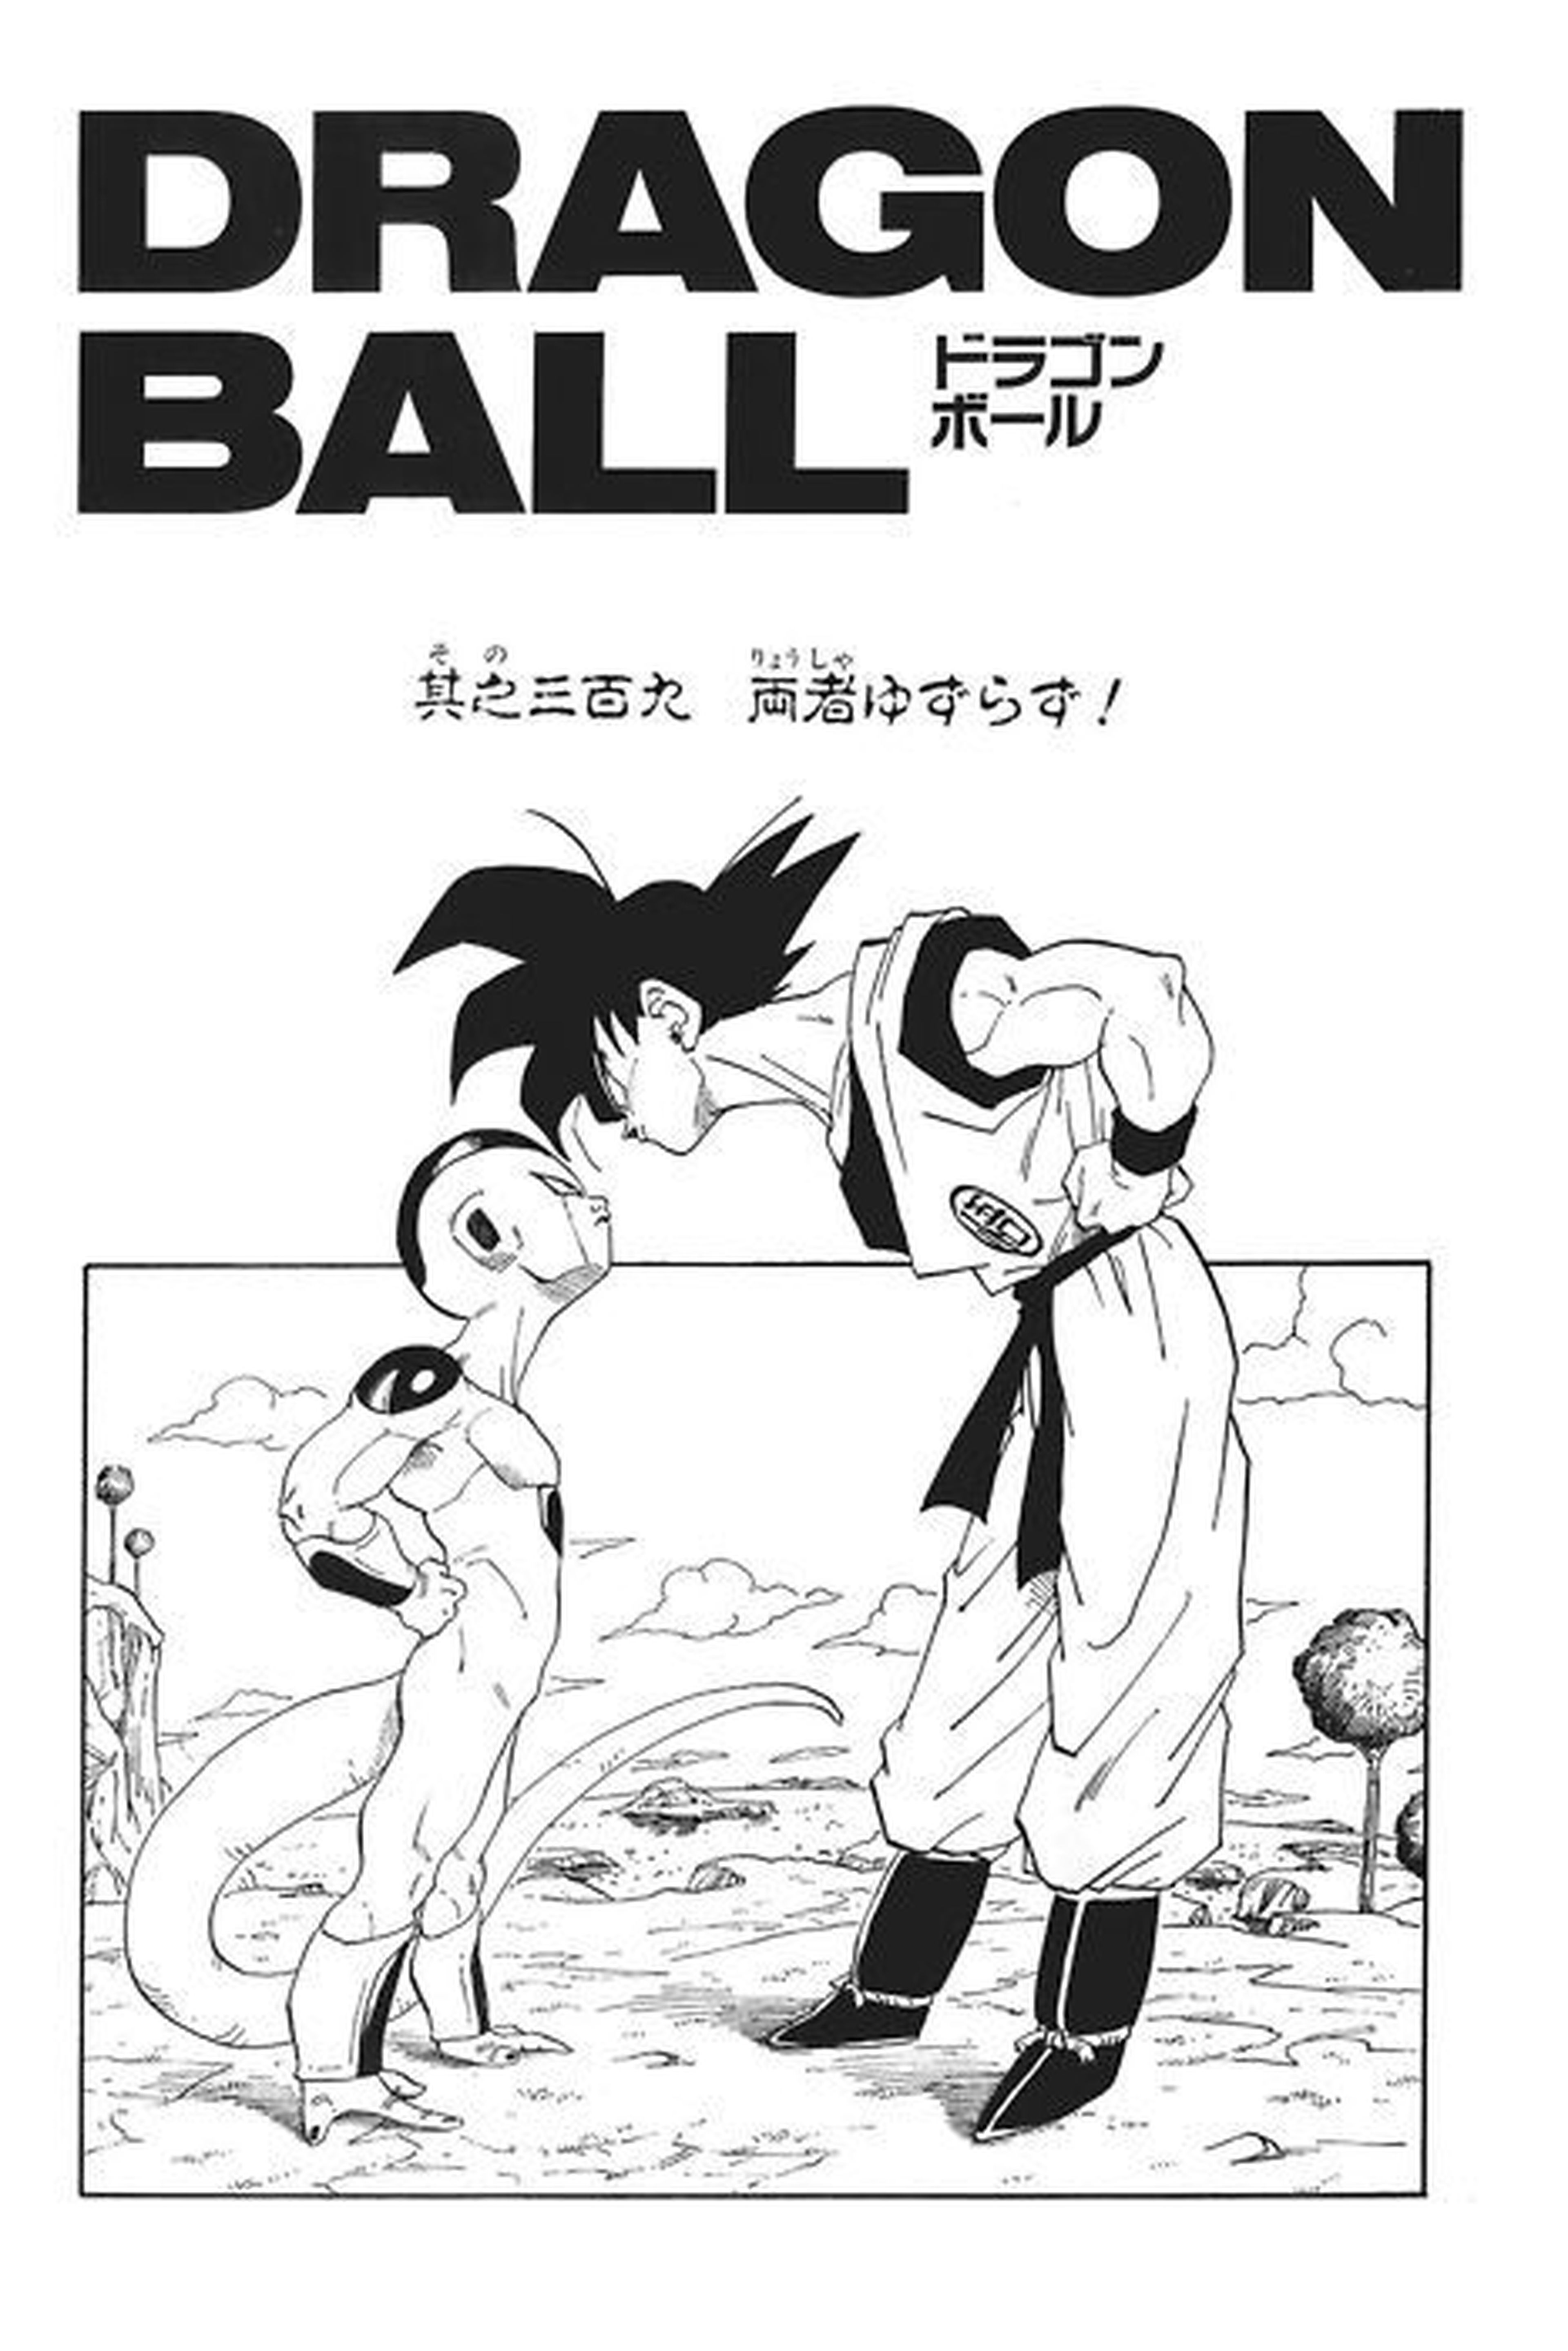 Dragon Ball - Los 10 mejores momentos del manga según los fans